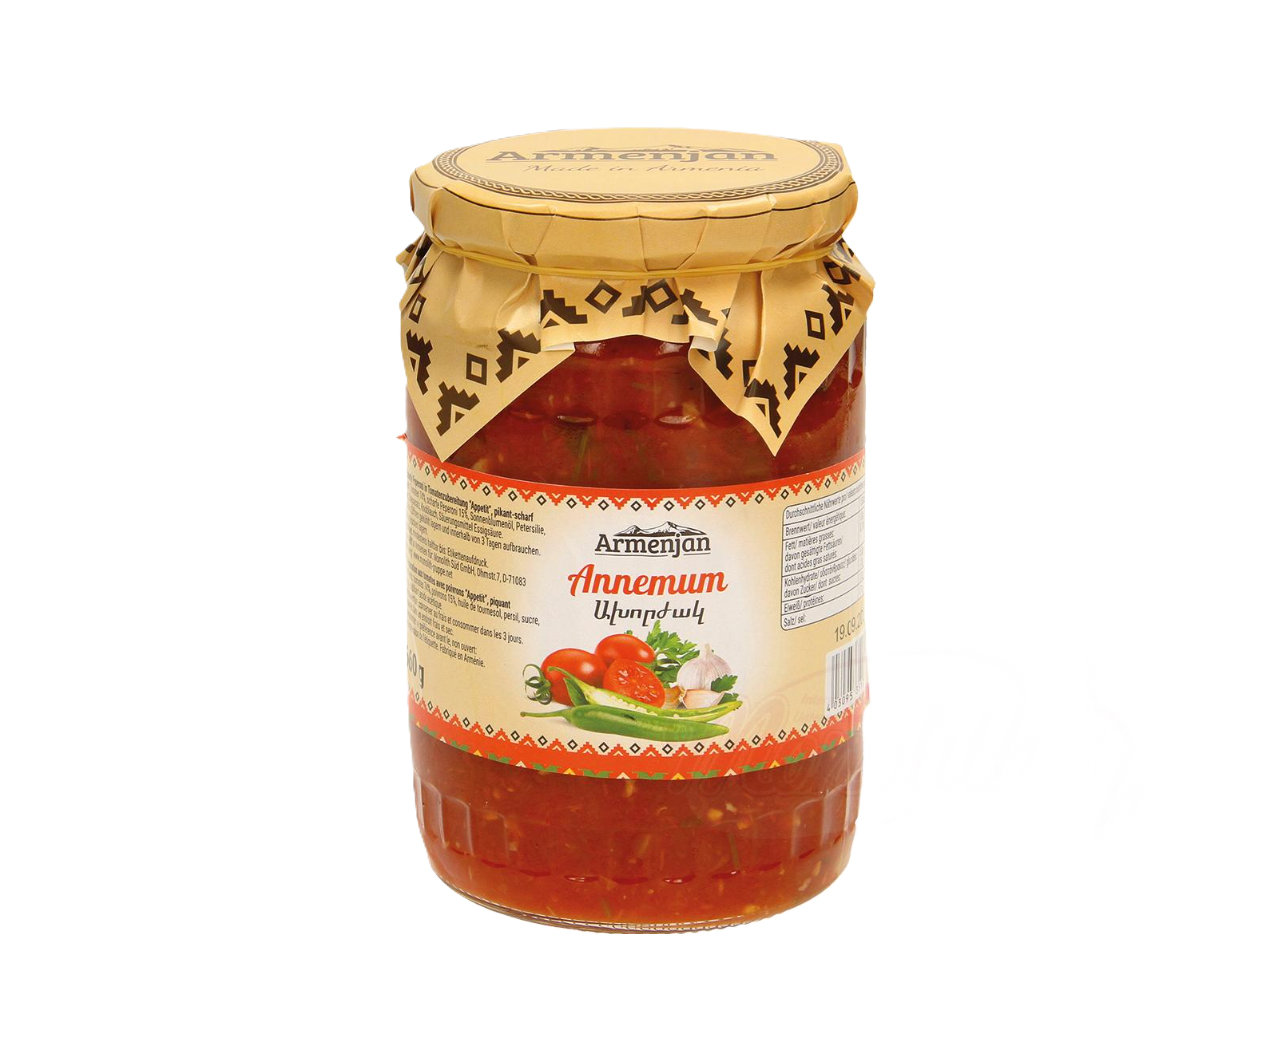 Armenjan - Hele hete peper in tomatensaus 660g.